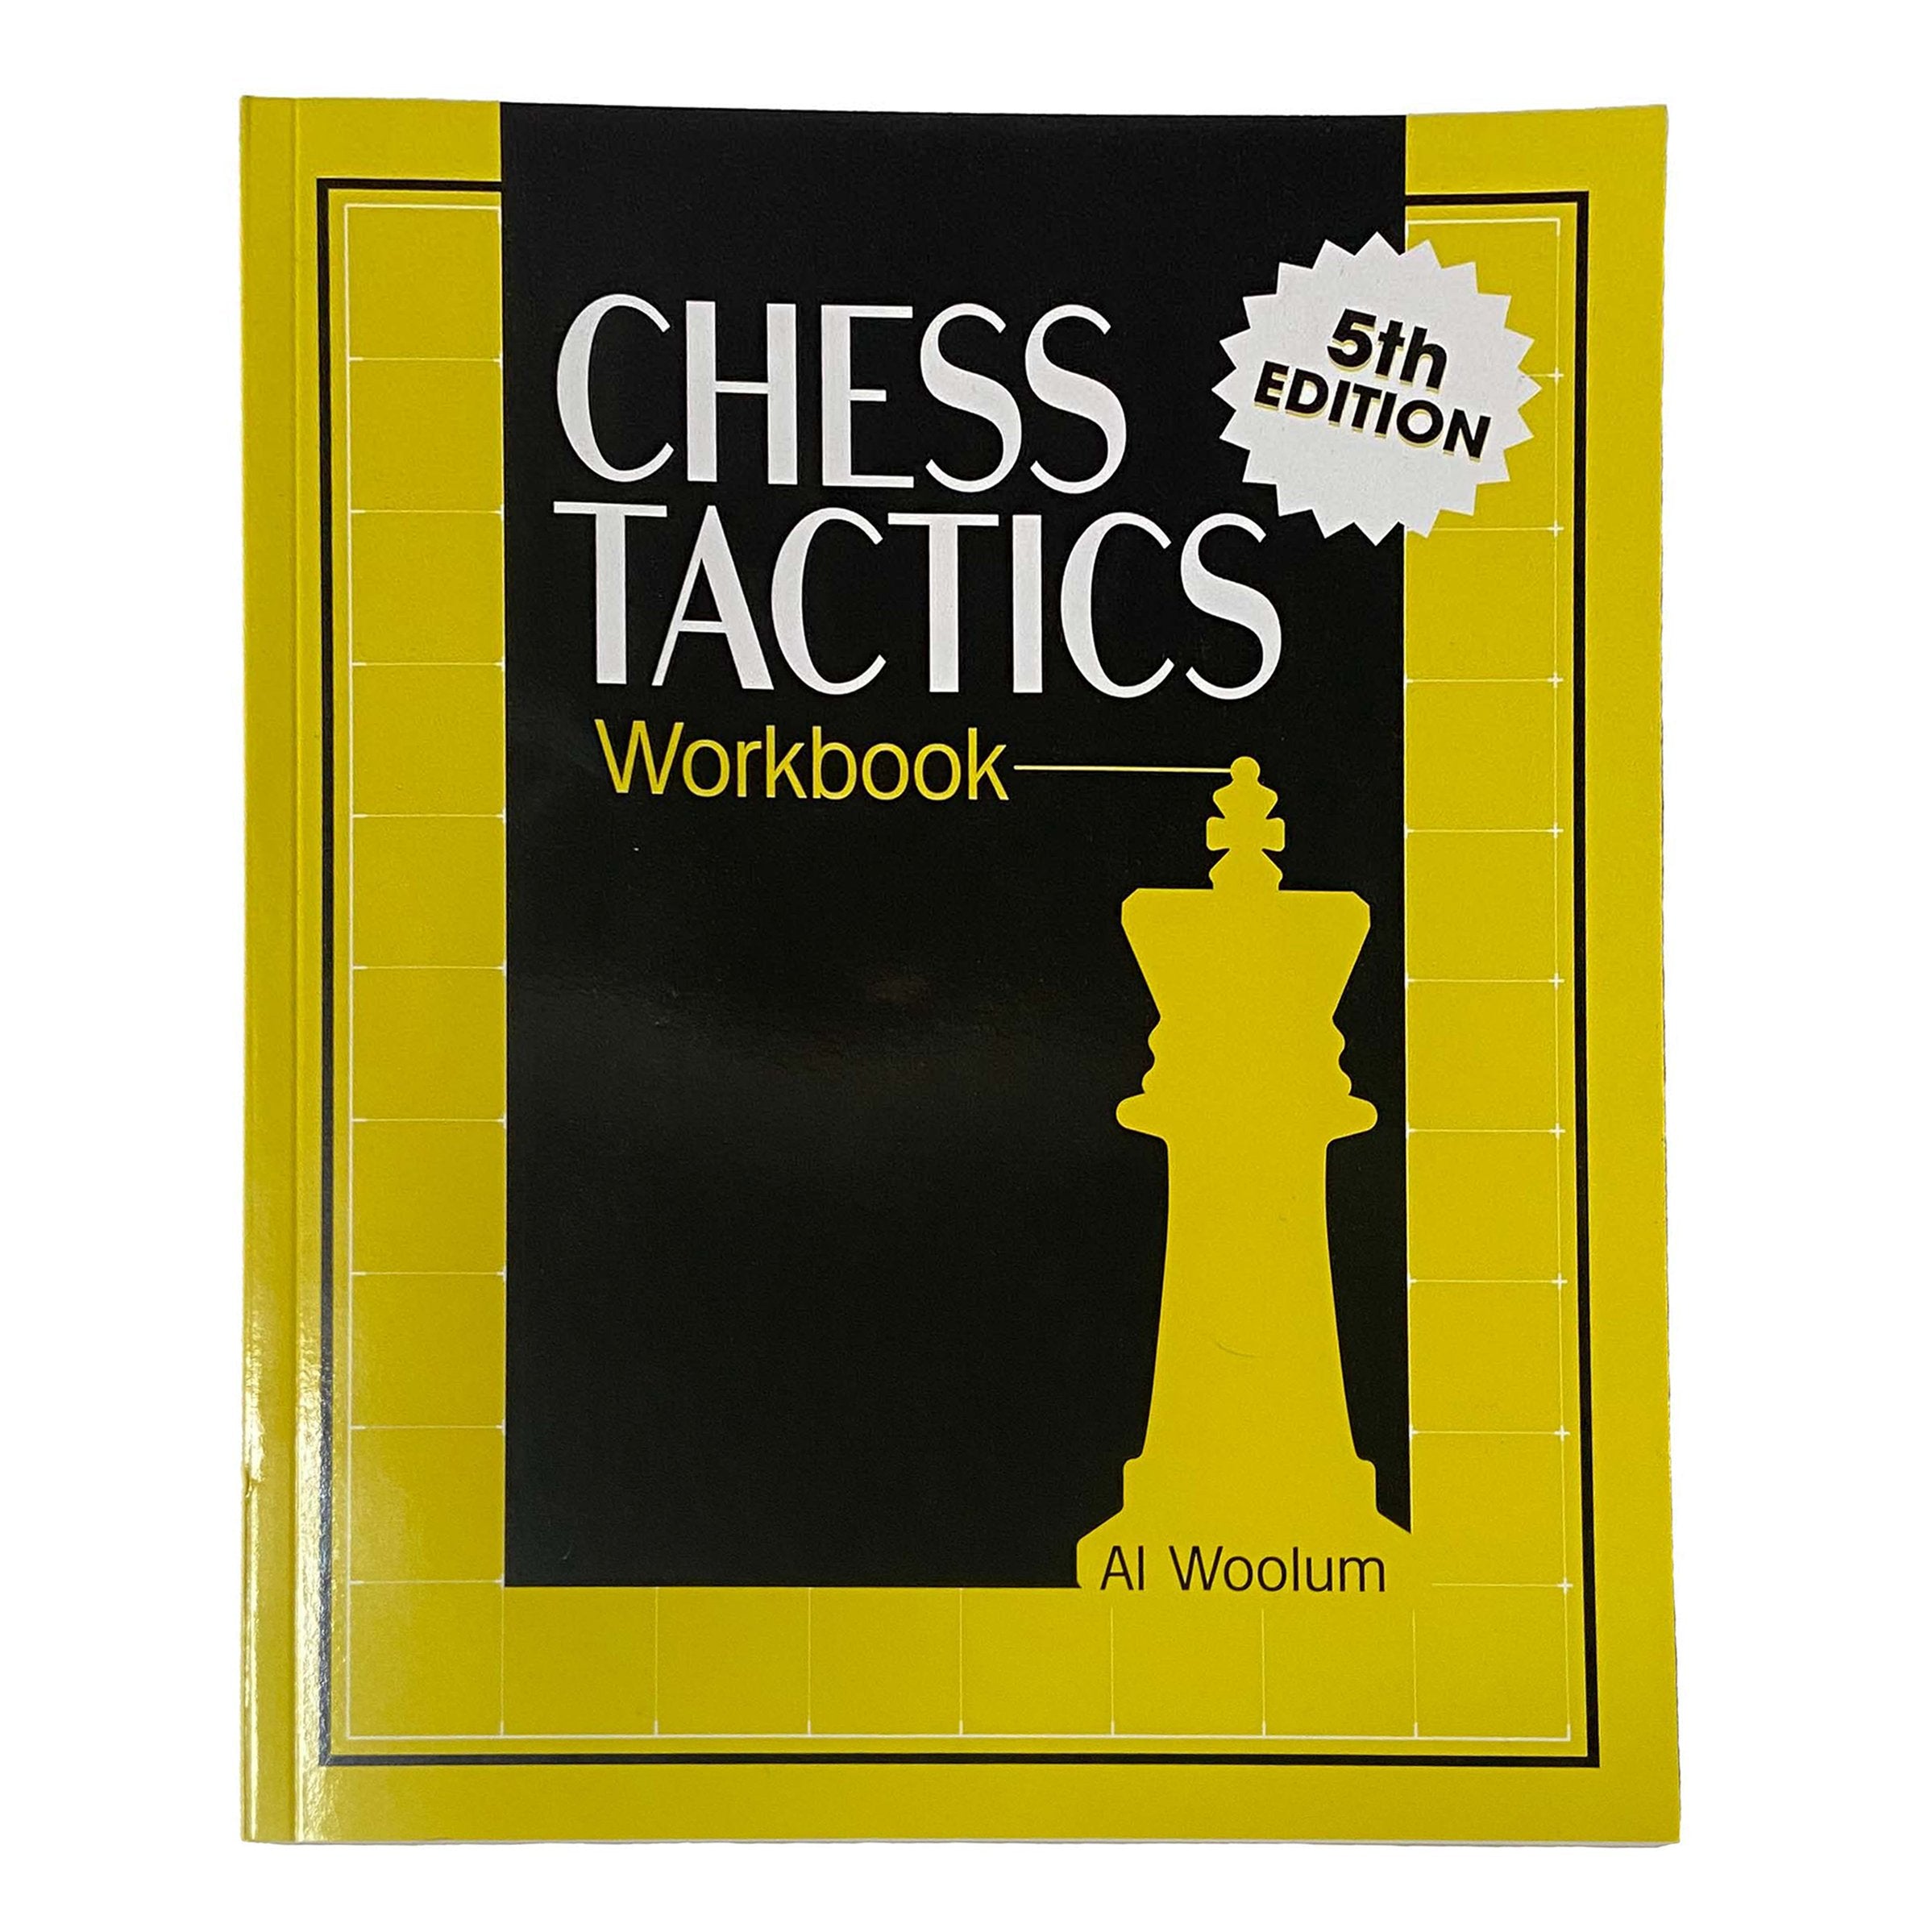 Chess Tactics from Scratch - Understanding Chess Tactics